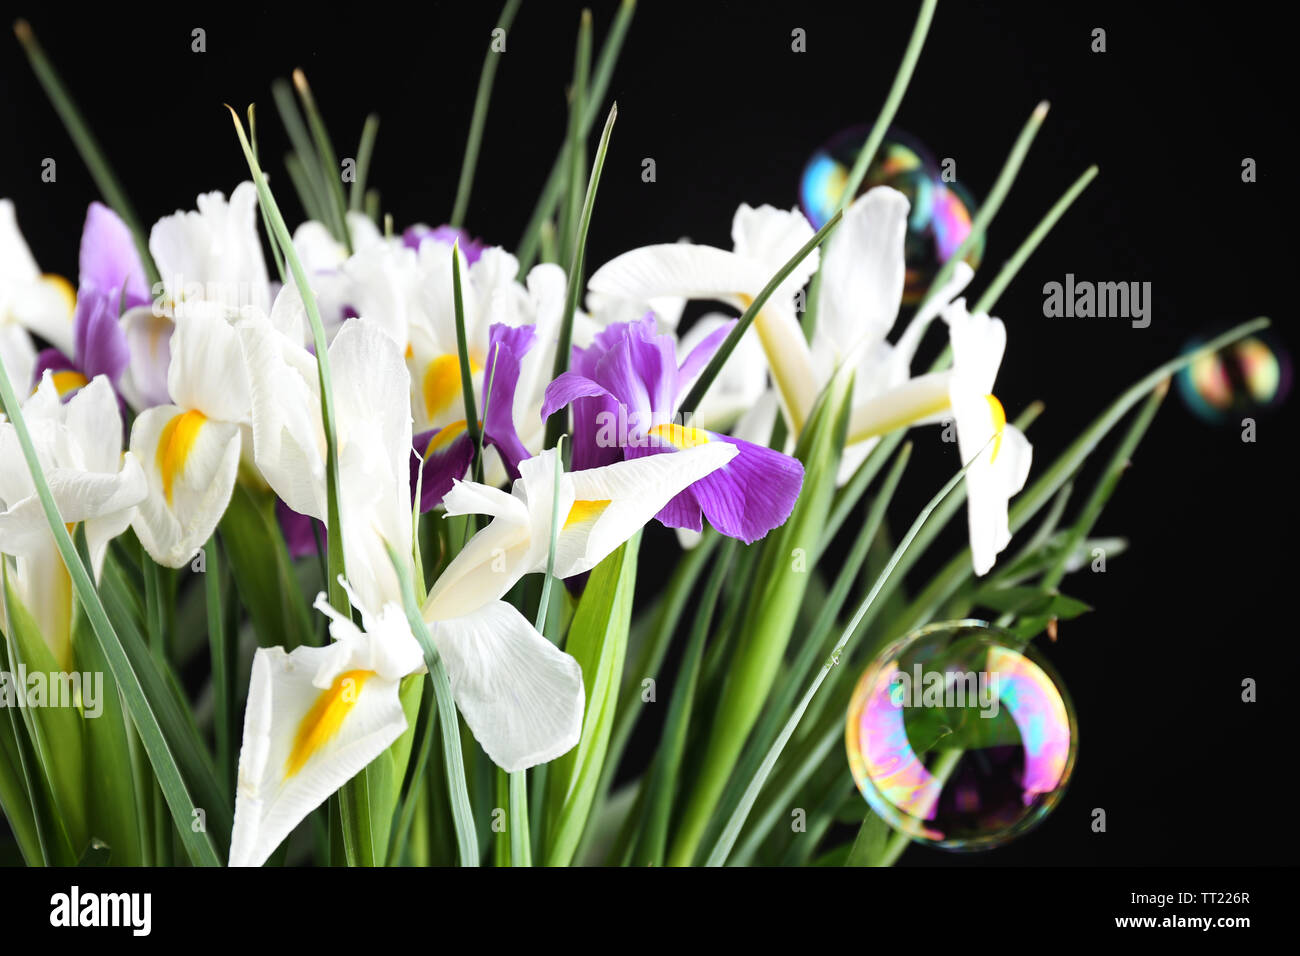 Beautiful irises on black background Stock Photo